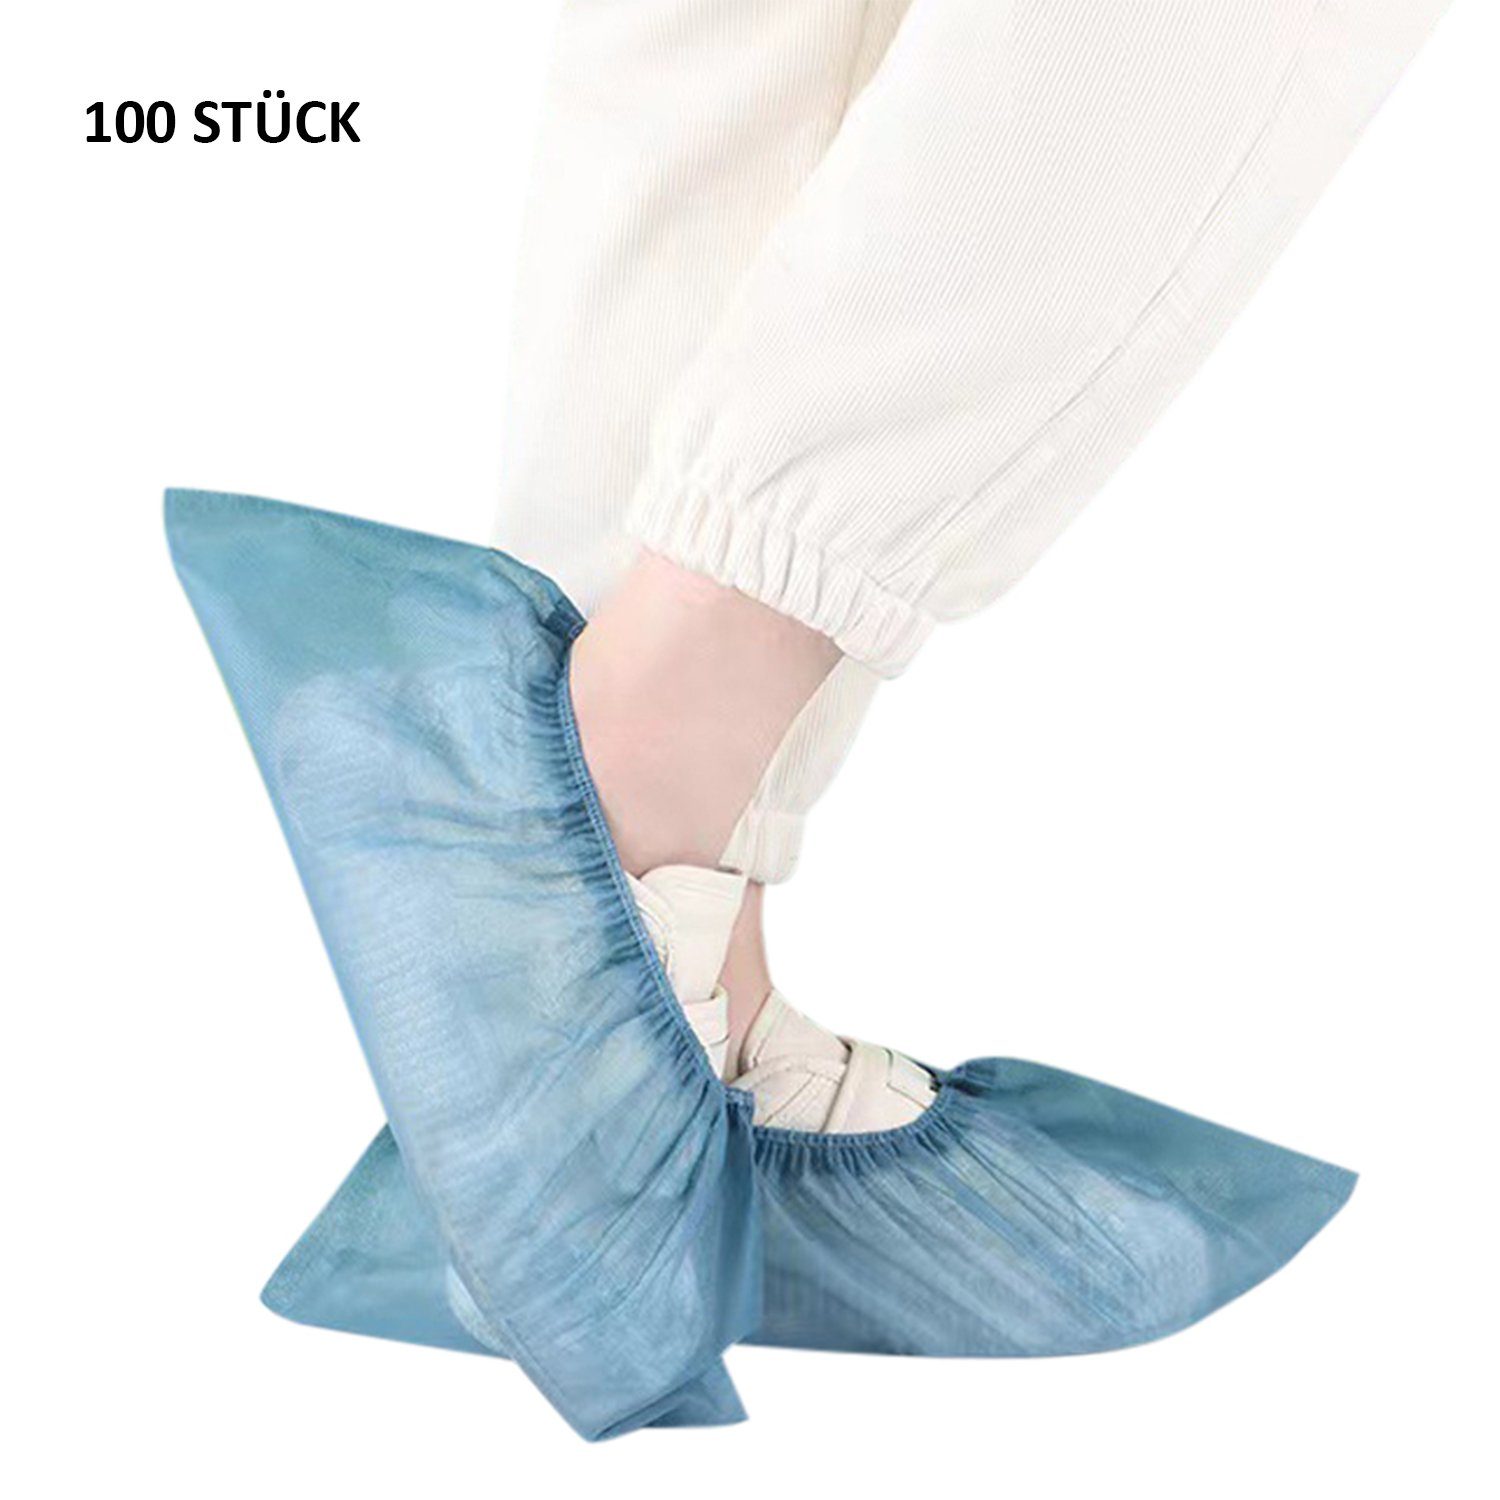 Daisred Schuhüberzieher 100 Stück rutschfest Einweg-Stiefel Blau hygienische Schuhüberzieher